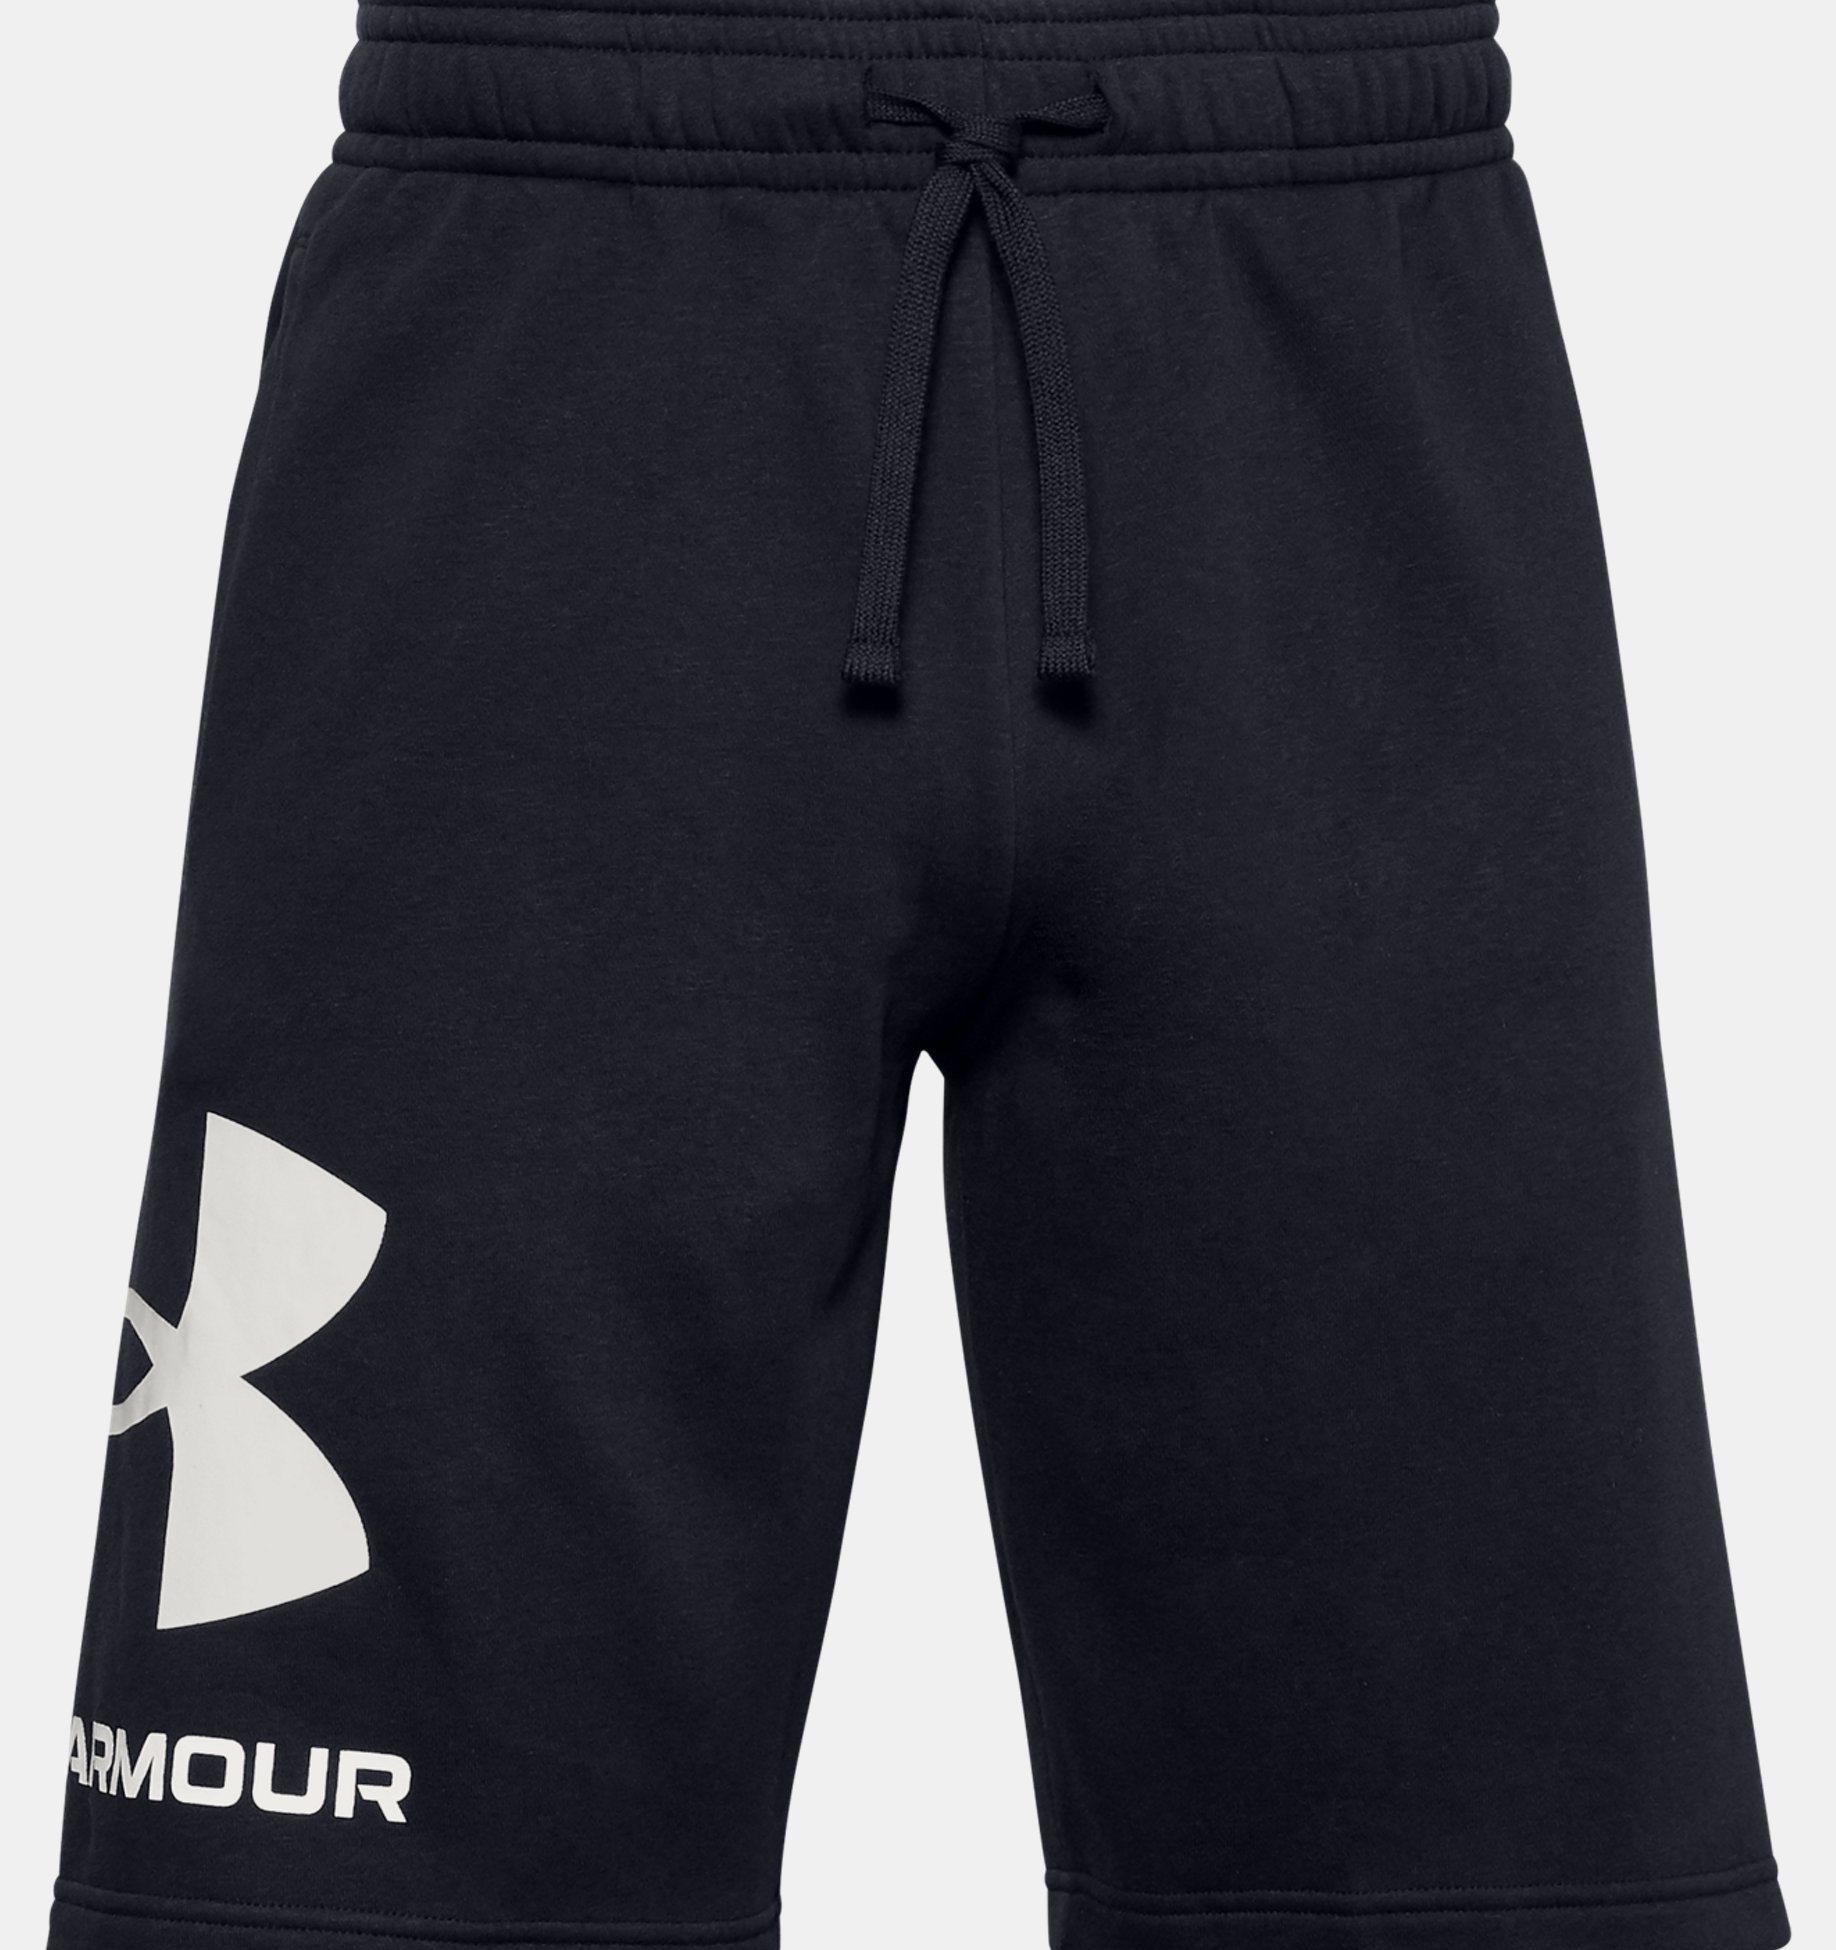 언더아머 Underarmour Mens UA Rival Fleece Big Logo Shorts